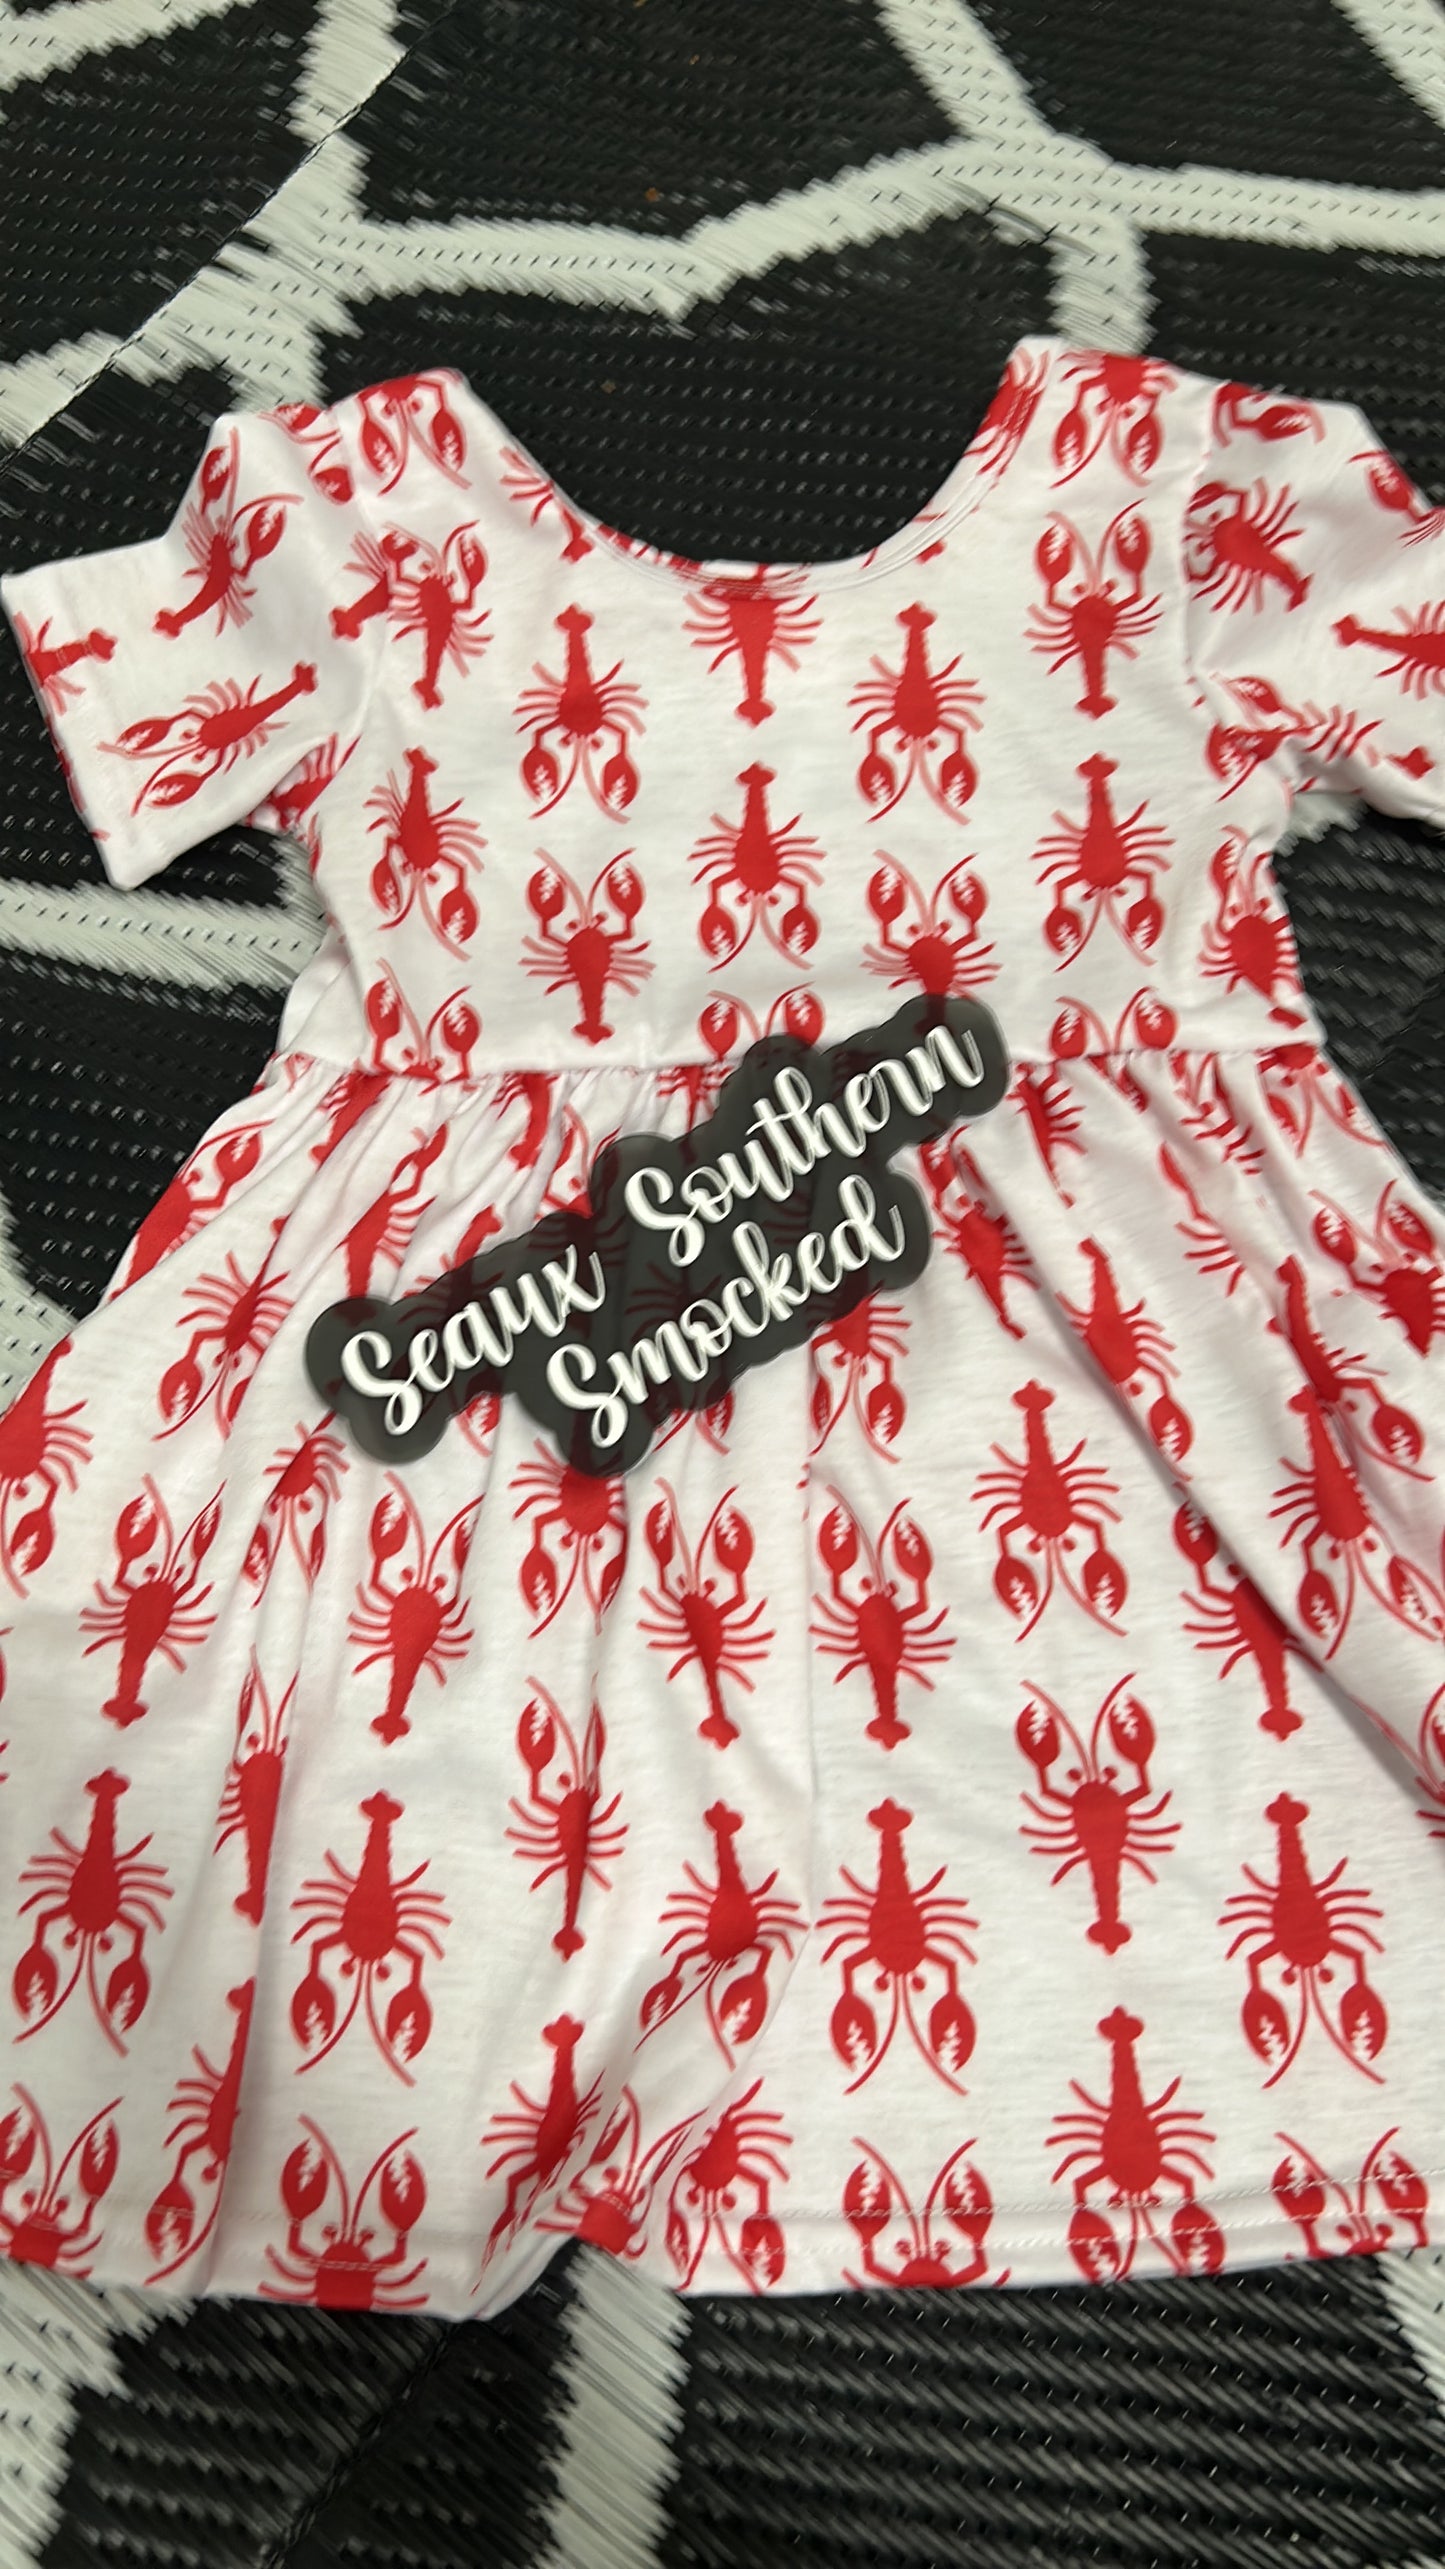 Crawfish Dress